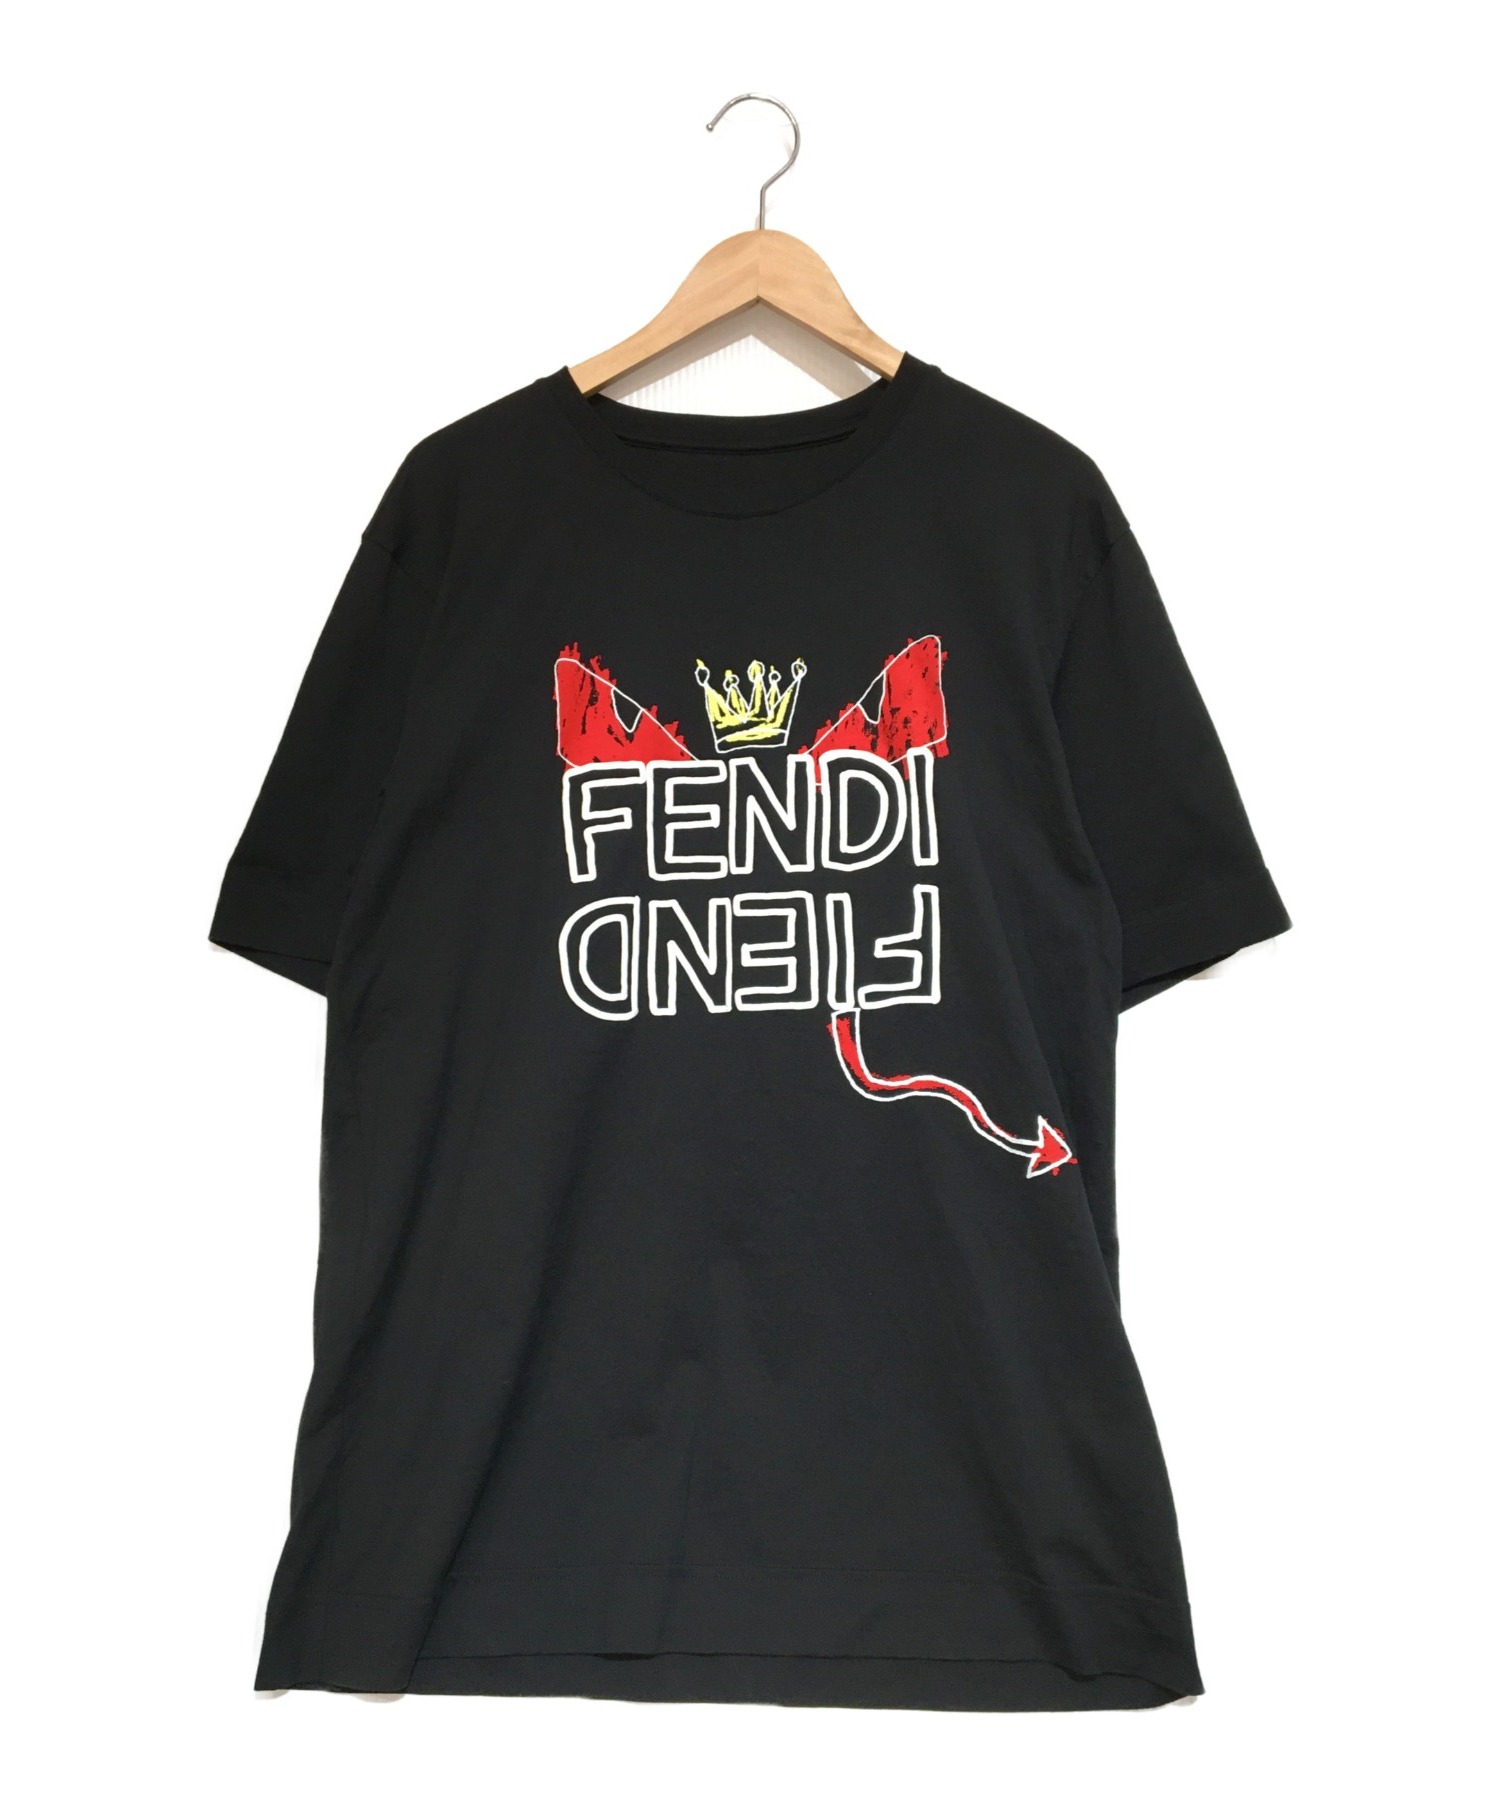 FENDI フェンディ モンスター Tシャツ サイズM - クリアファイル